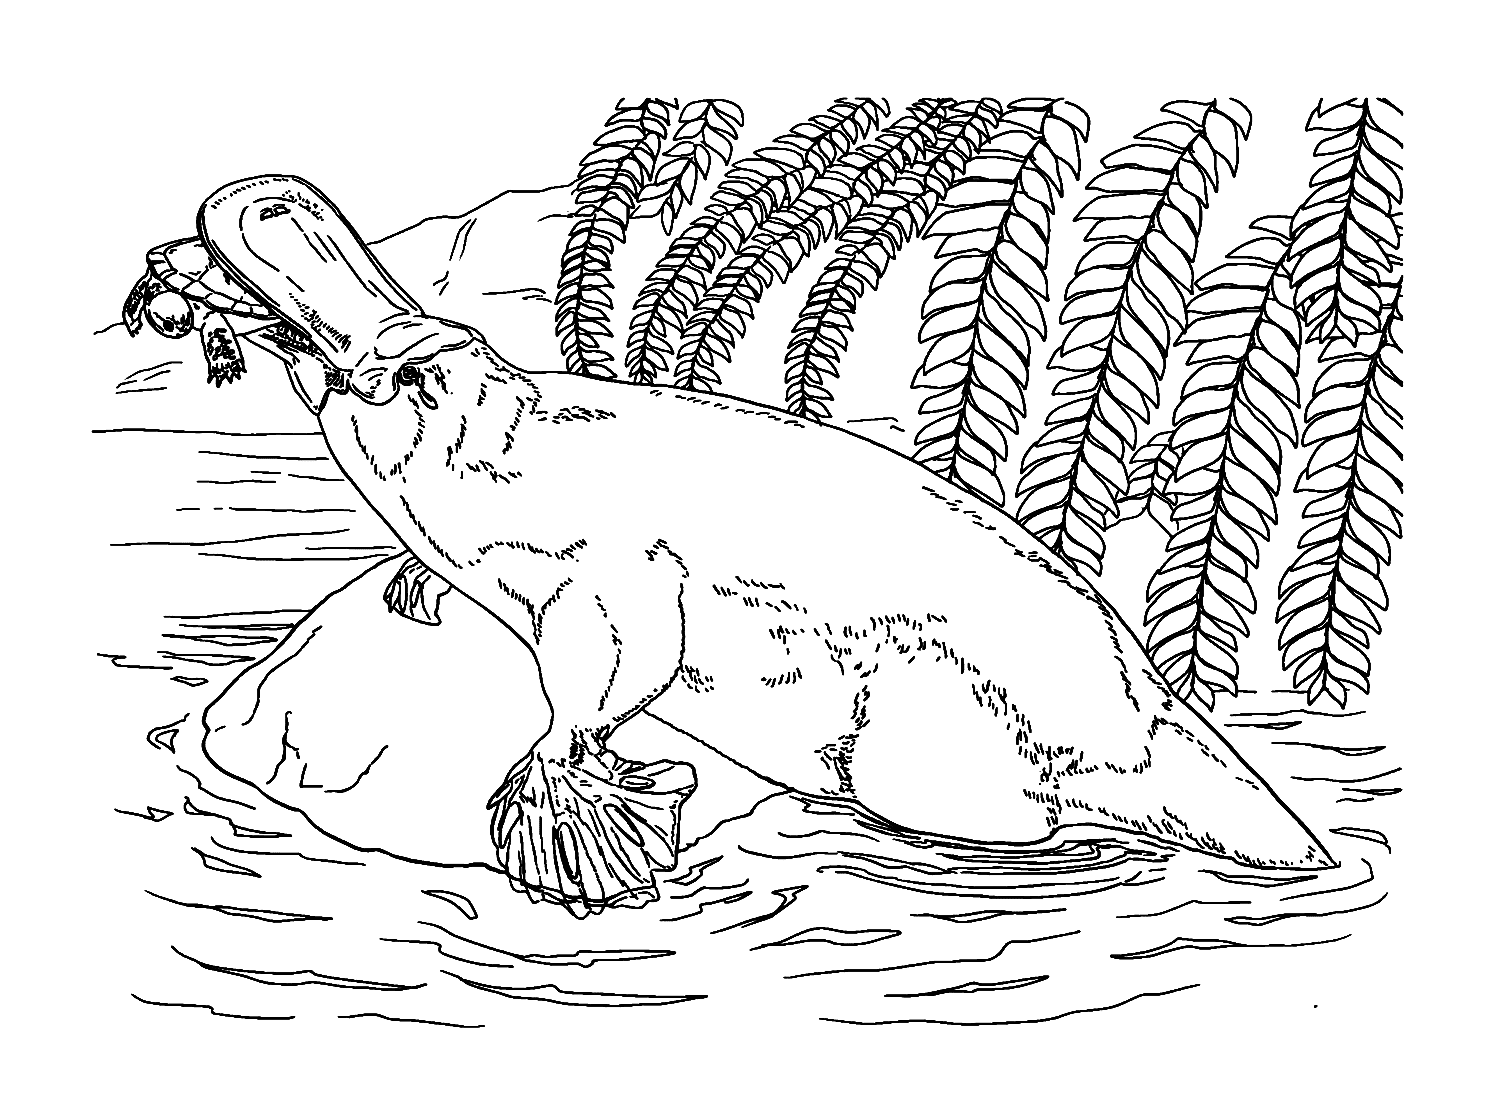 Platypus rampant sur un rocher de Platypus